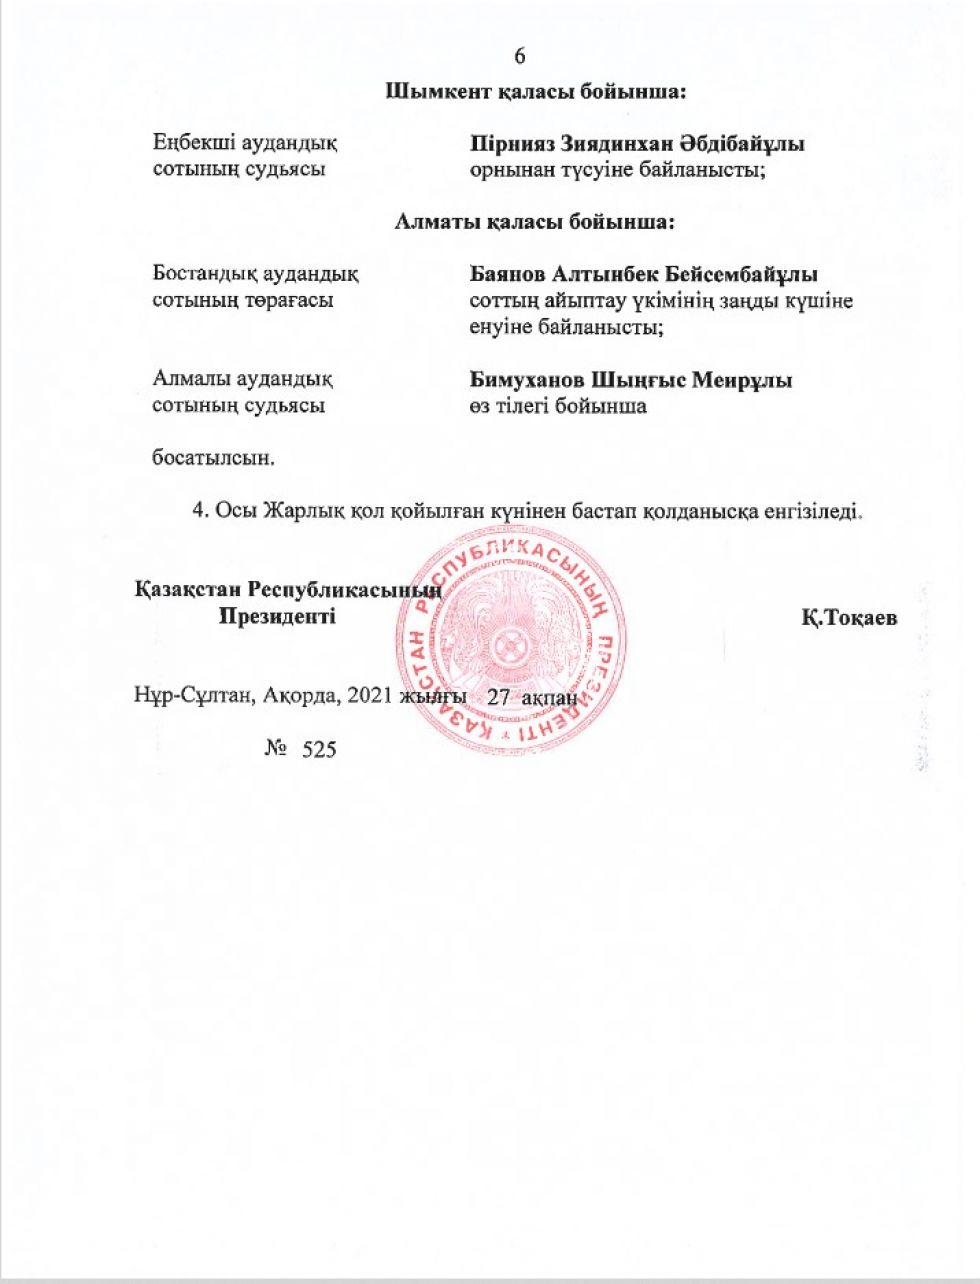 Указ президента о назначении судей последний март